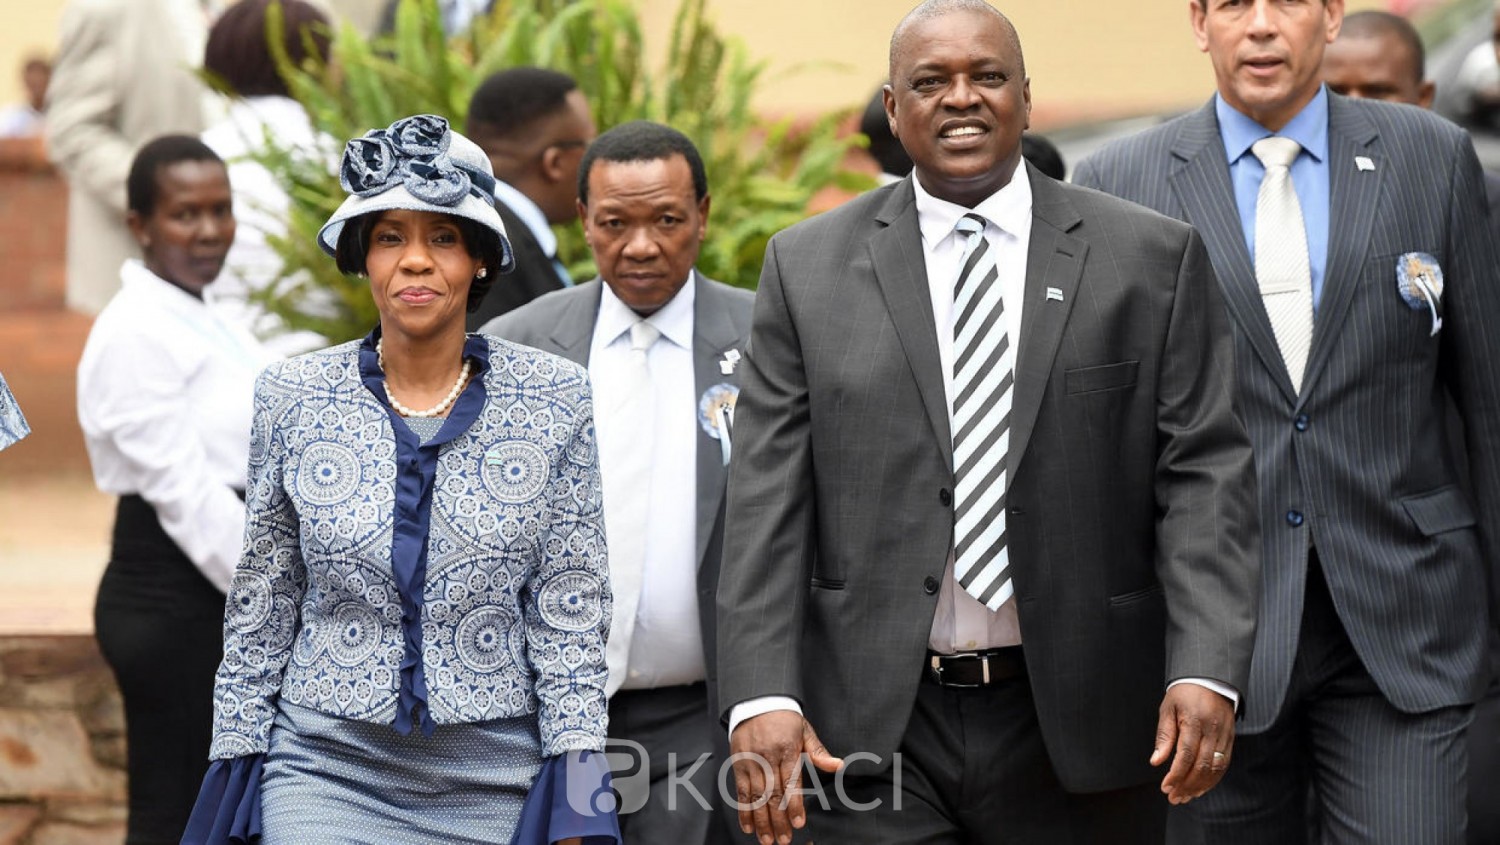 Botswana : De retour d'un voyage présidentiel, Mokgweetsi Masisi mis en quarantaine